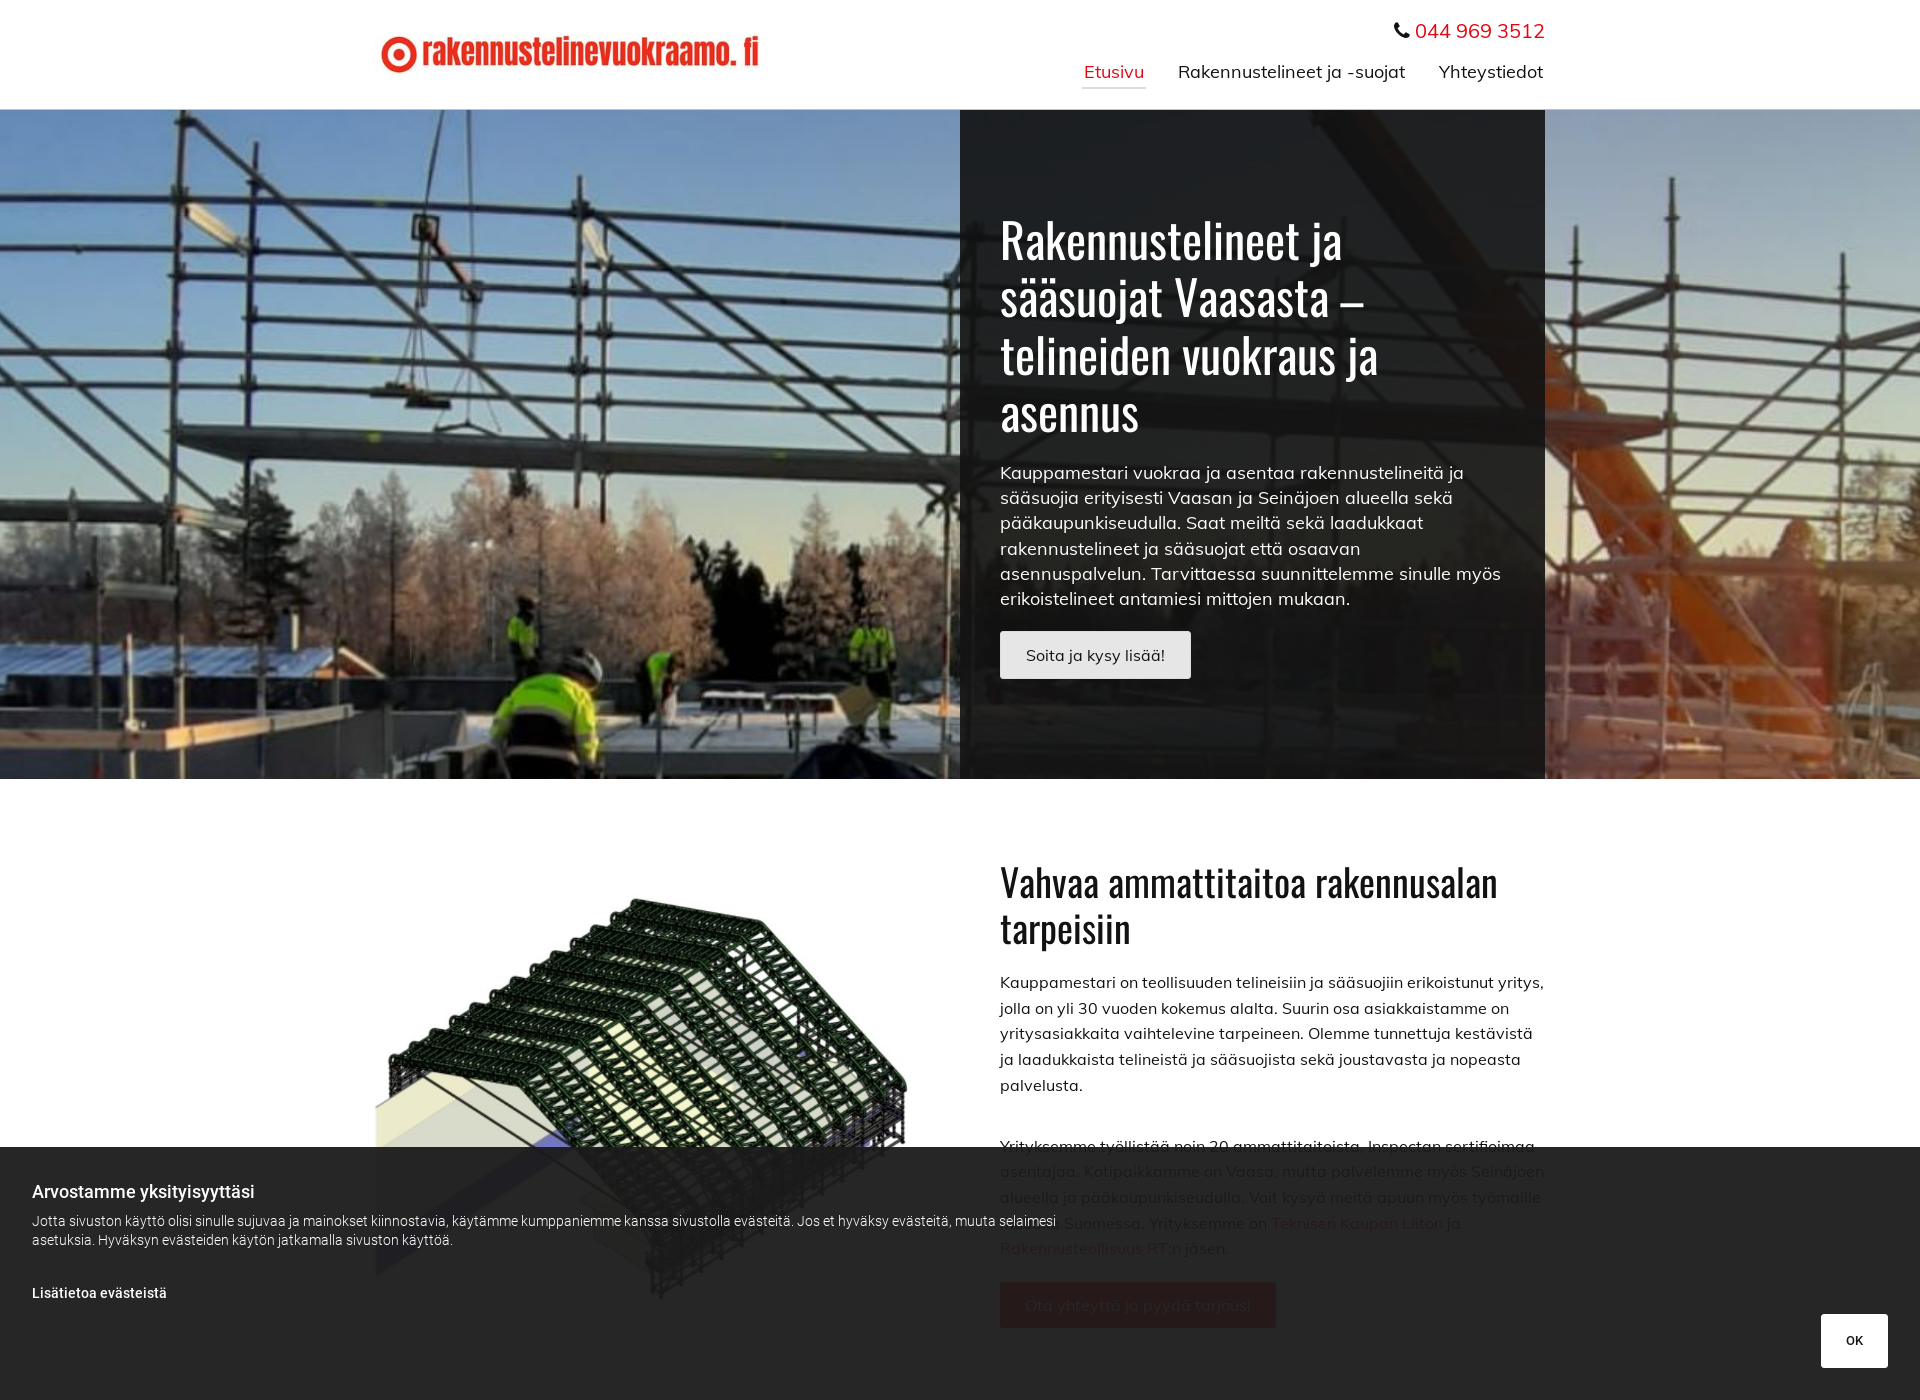 Näyttökuva rakennustelinevuokraamo.fi